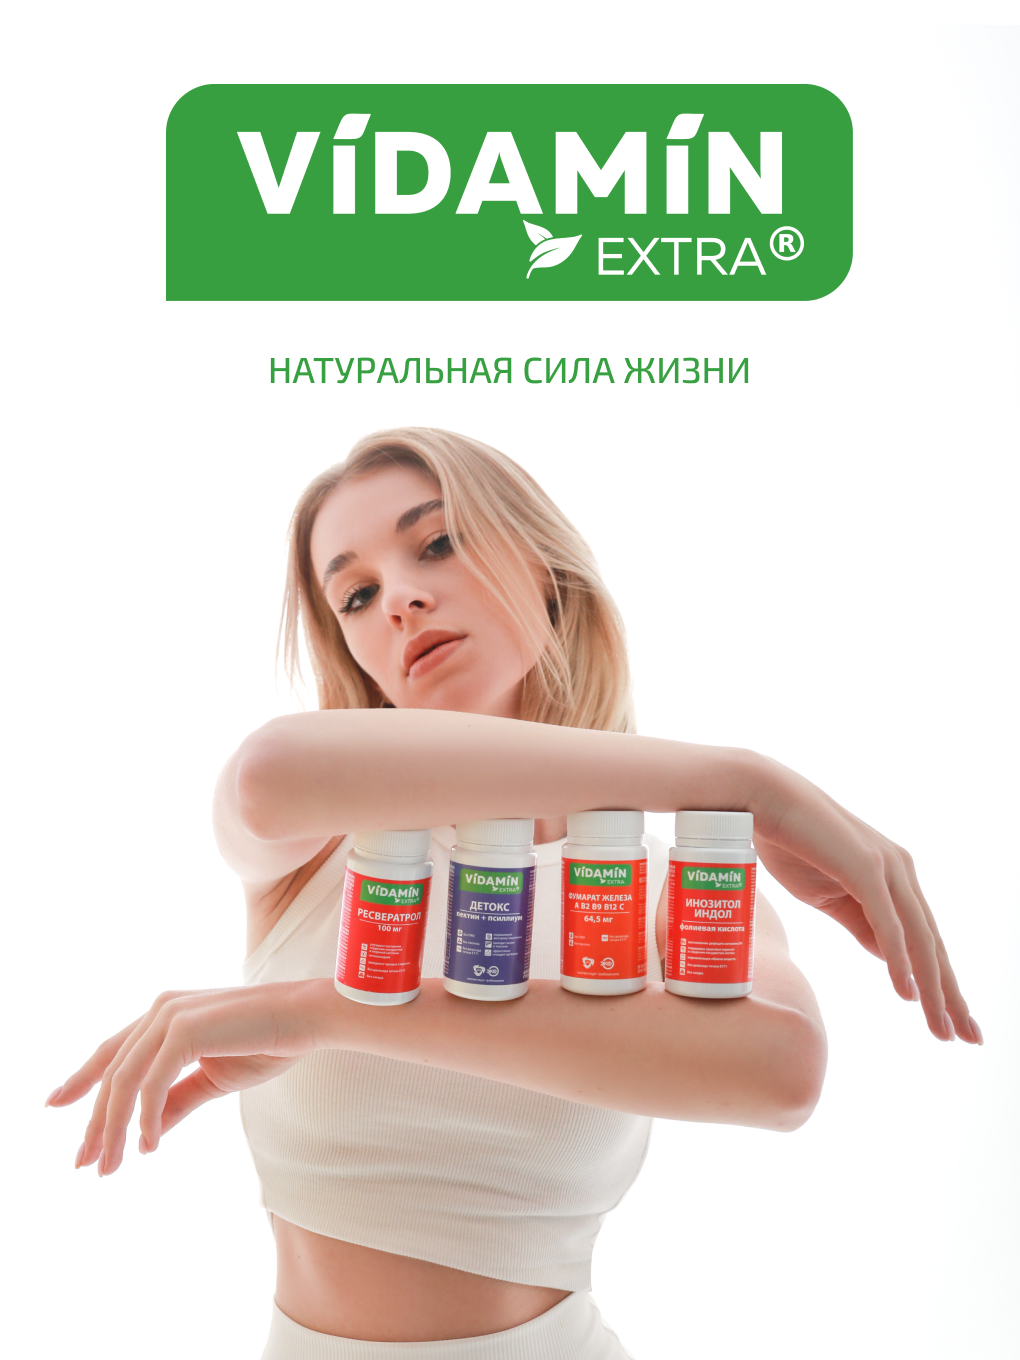 Инозитол индол витамин В9 VIDAMIN EXTRA для женского здоровья - фото 17